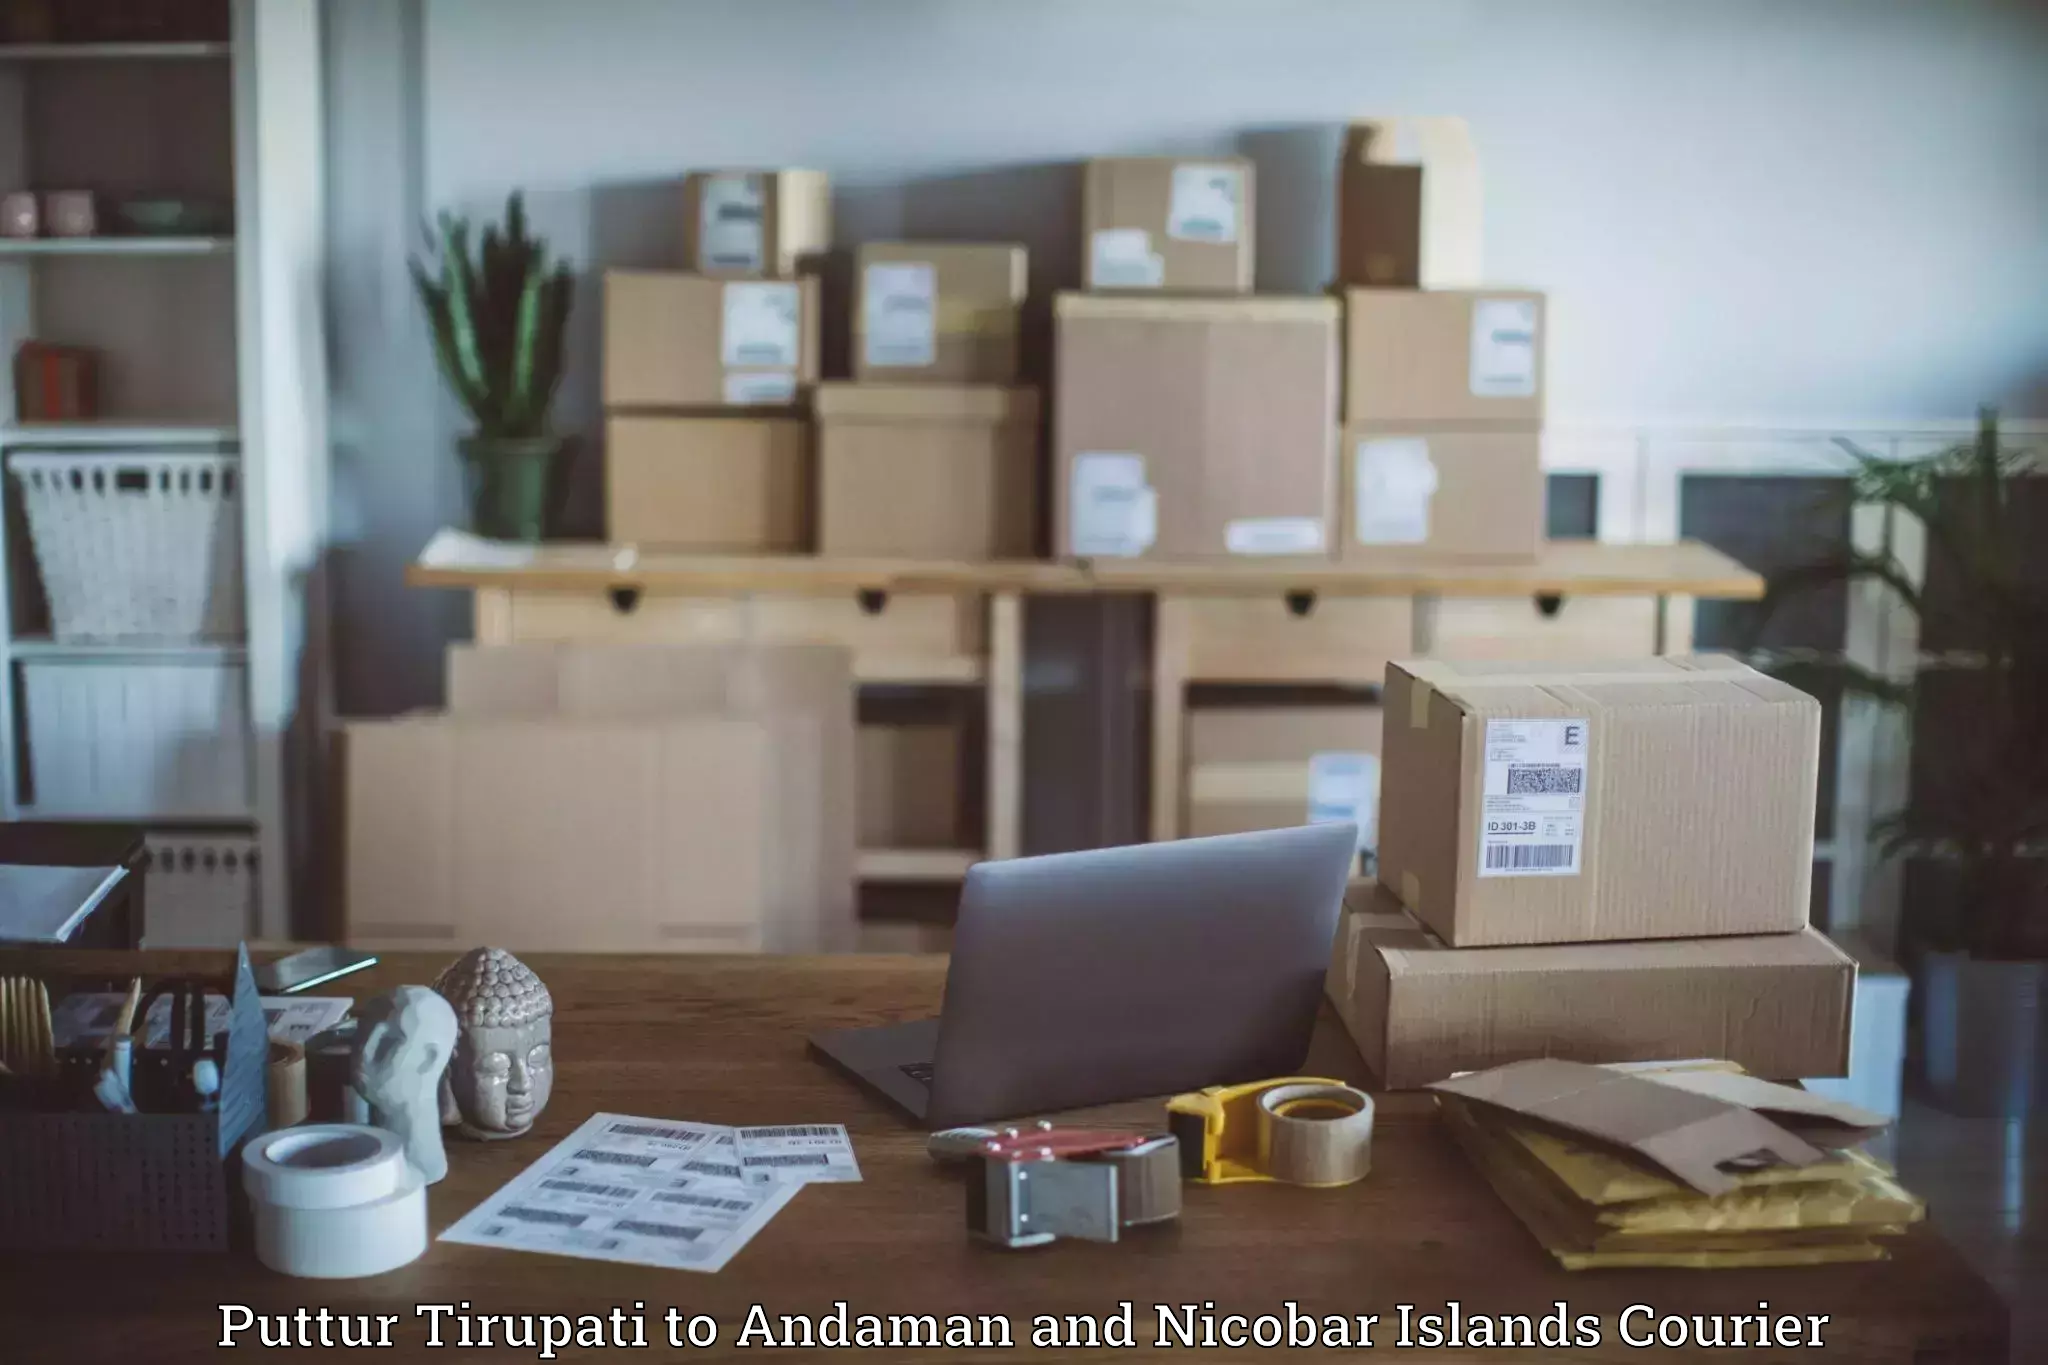 Logistics management Puttur Tirupati to Andaman and Nicobar Islands